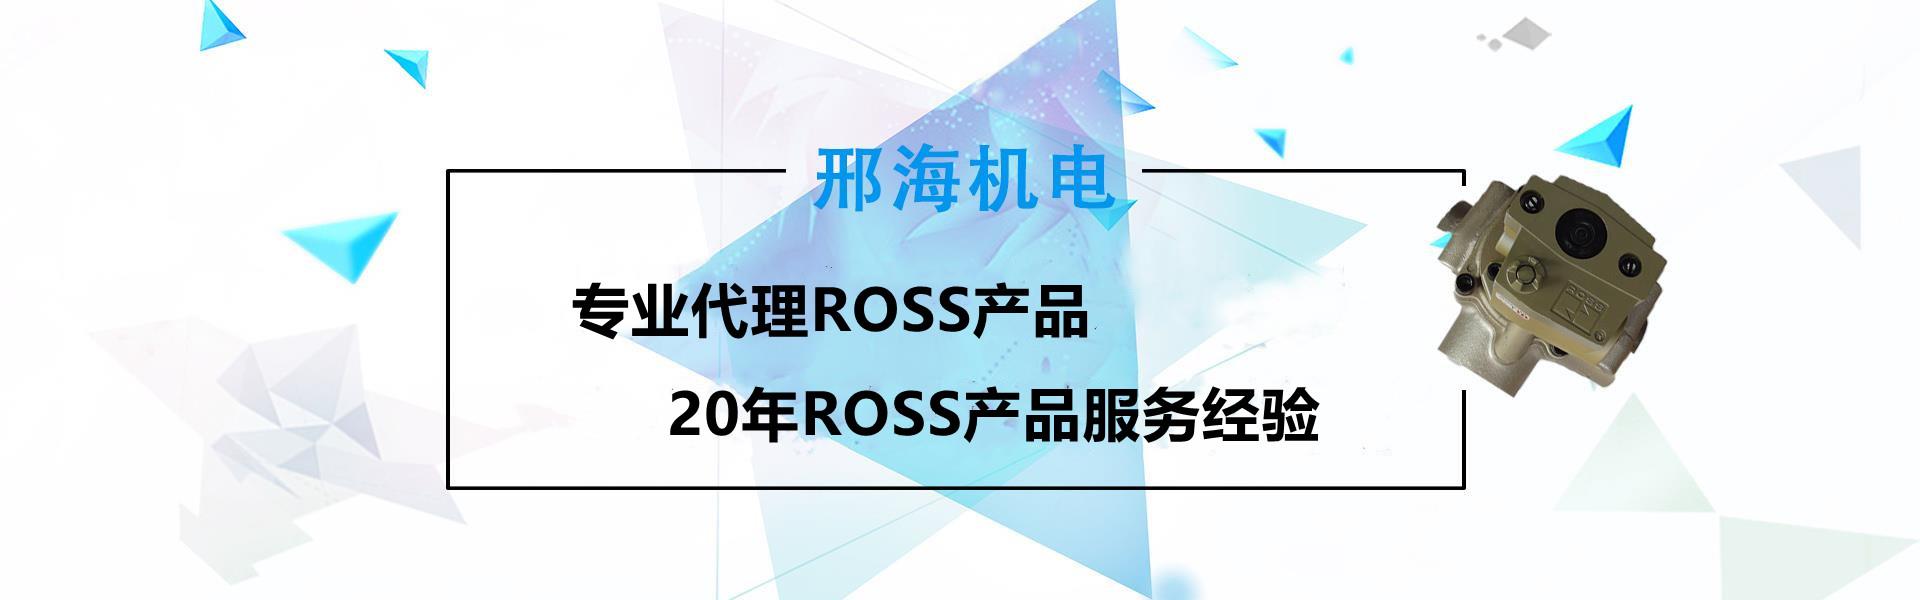 罗斯rossu厂家批发电磁阀供应J3573A6162